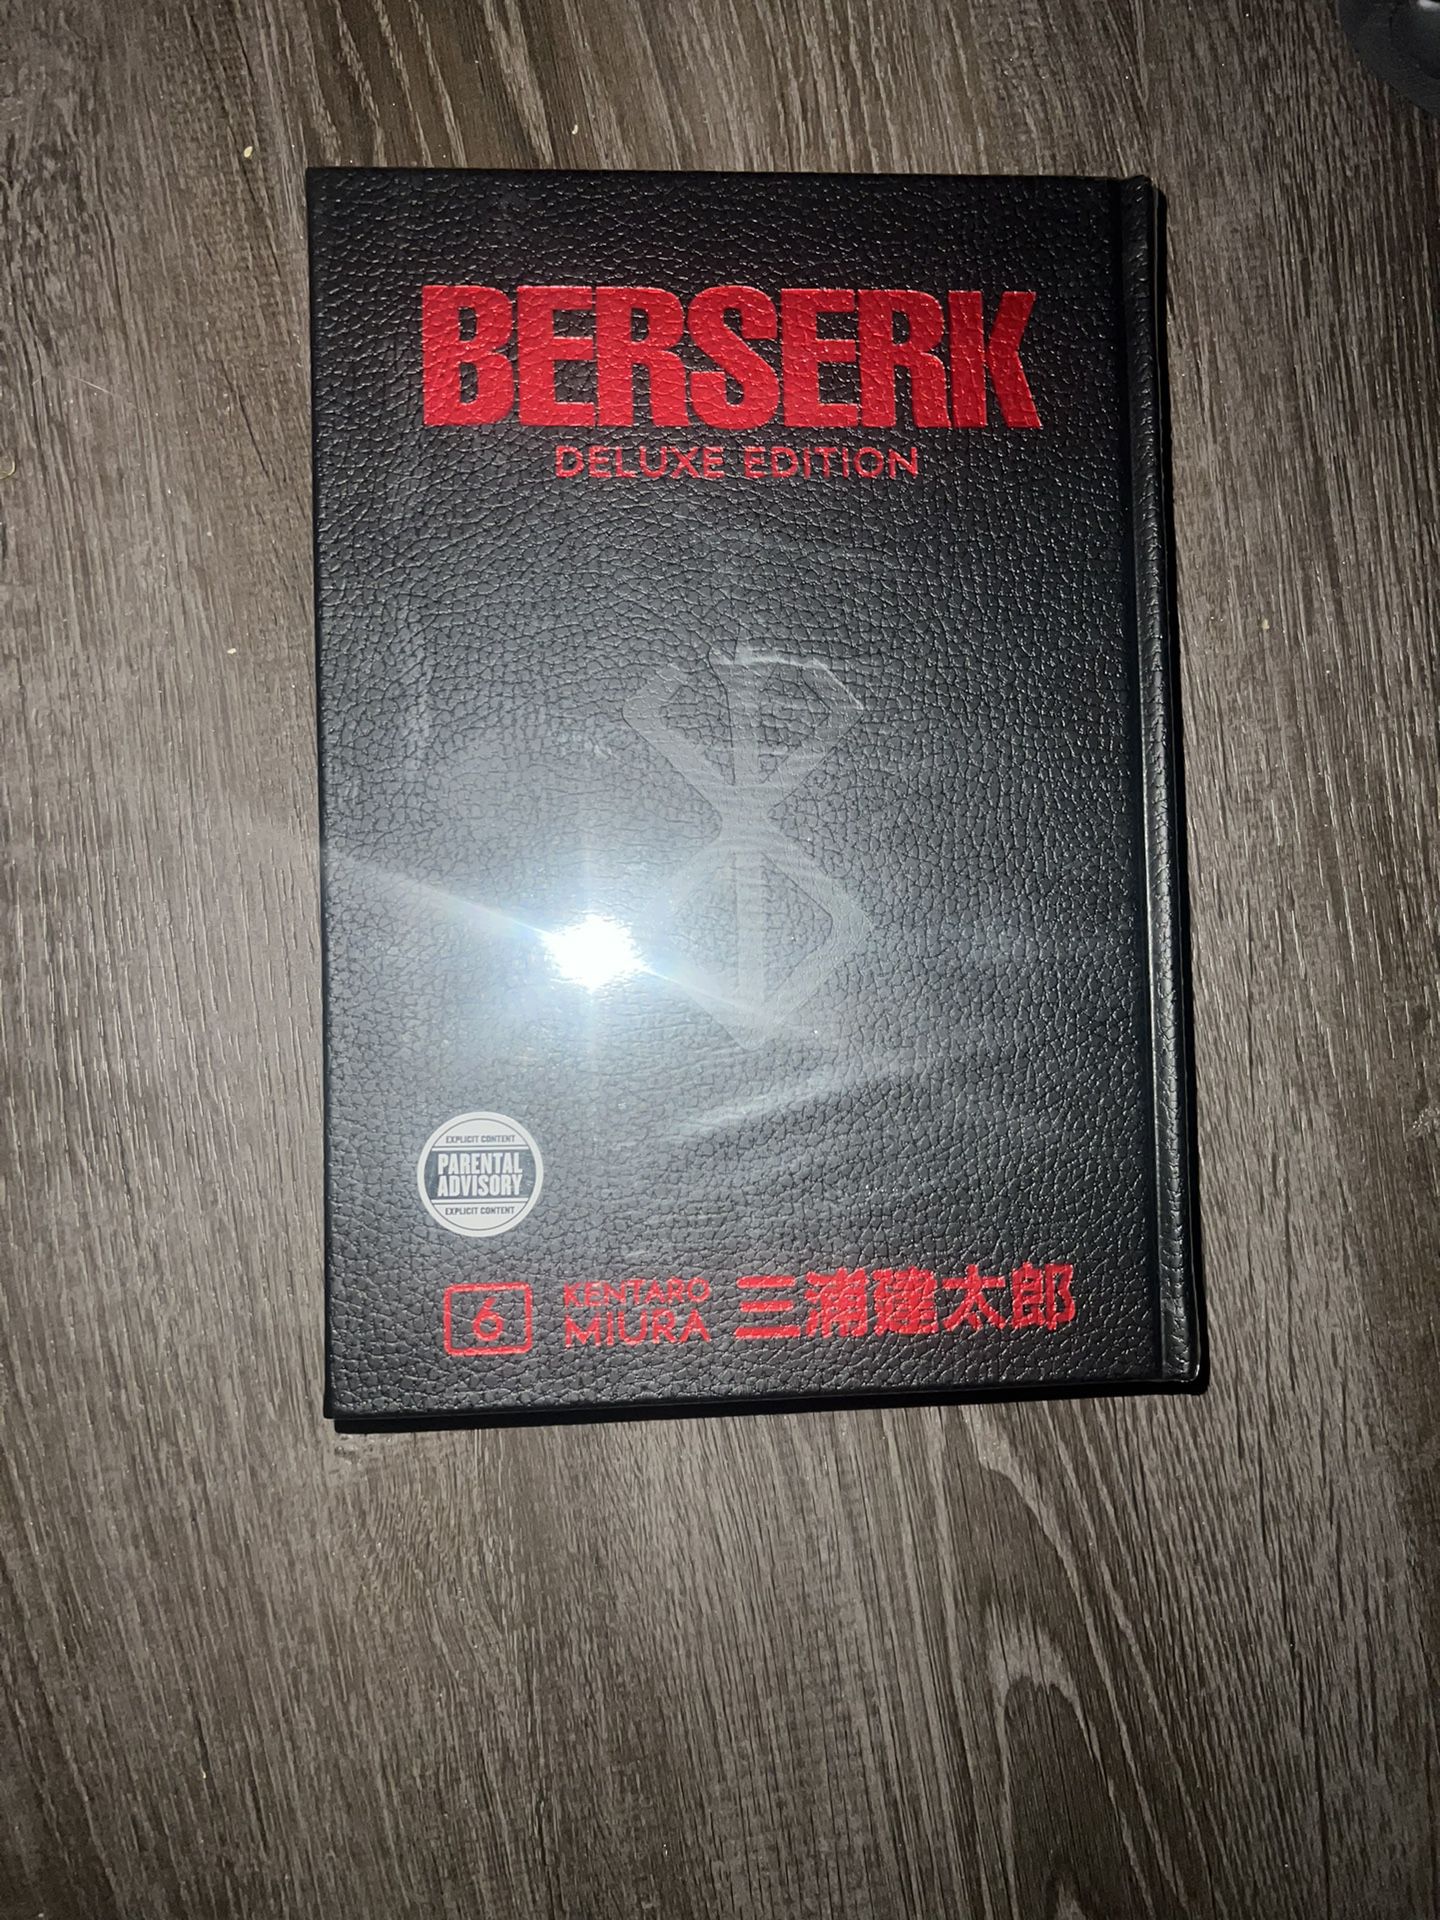 Berserk Deluxe 6 New 